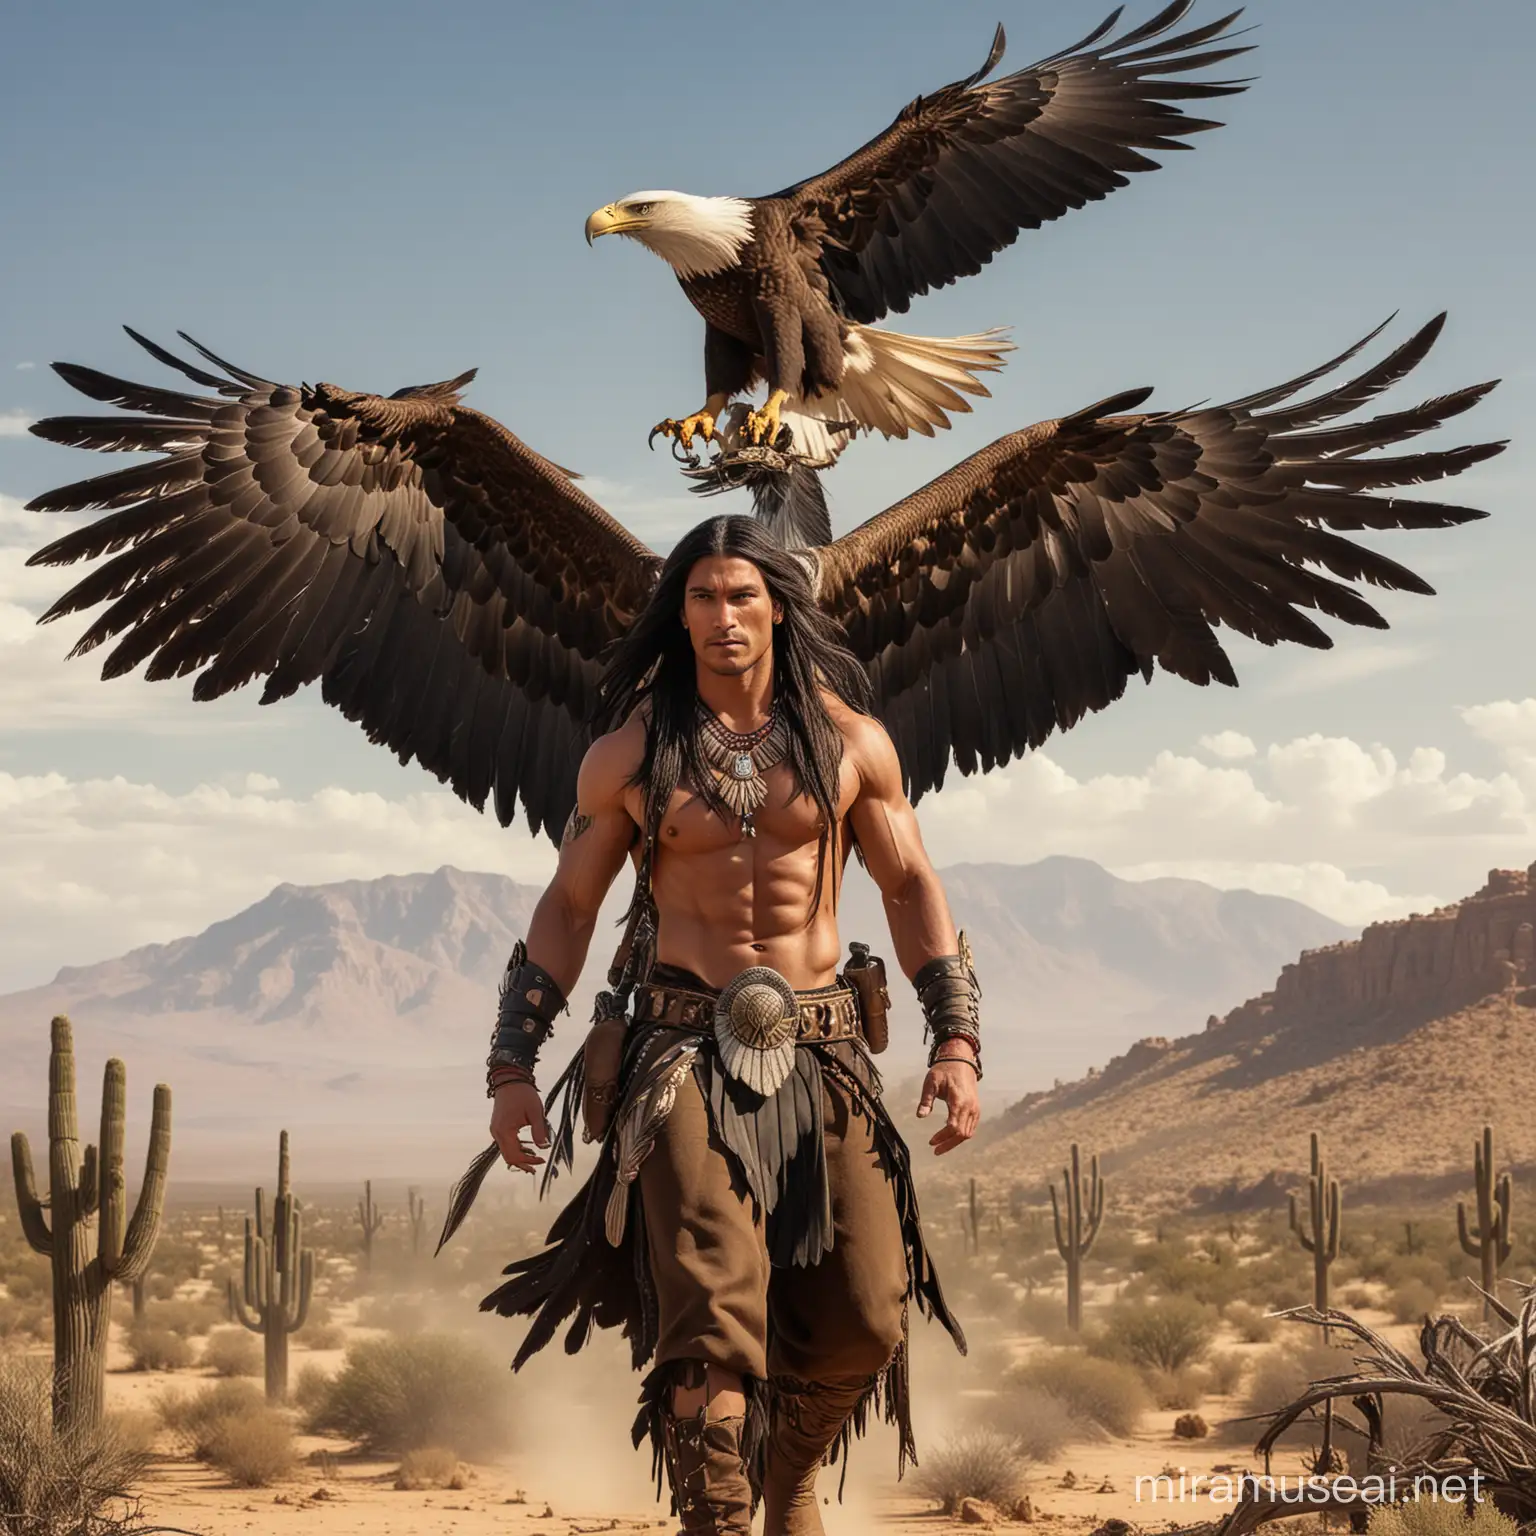 Guerrero apache alto musculoso guapo con cabello negro largo y grandes alas de aguila que le salen de la espalda va volando en el aire por el desierto junto a una gigantesca aguila real y de fondo guerreros apaches 